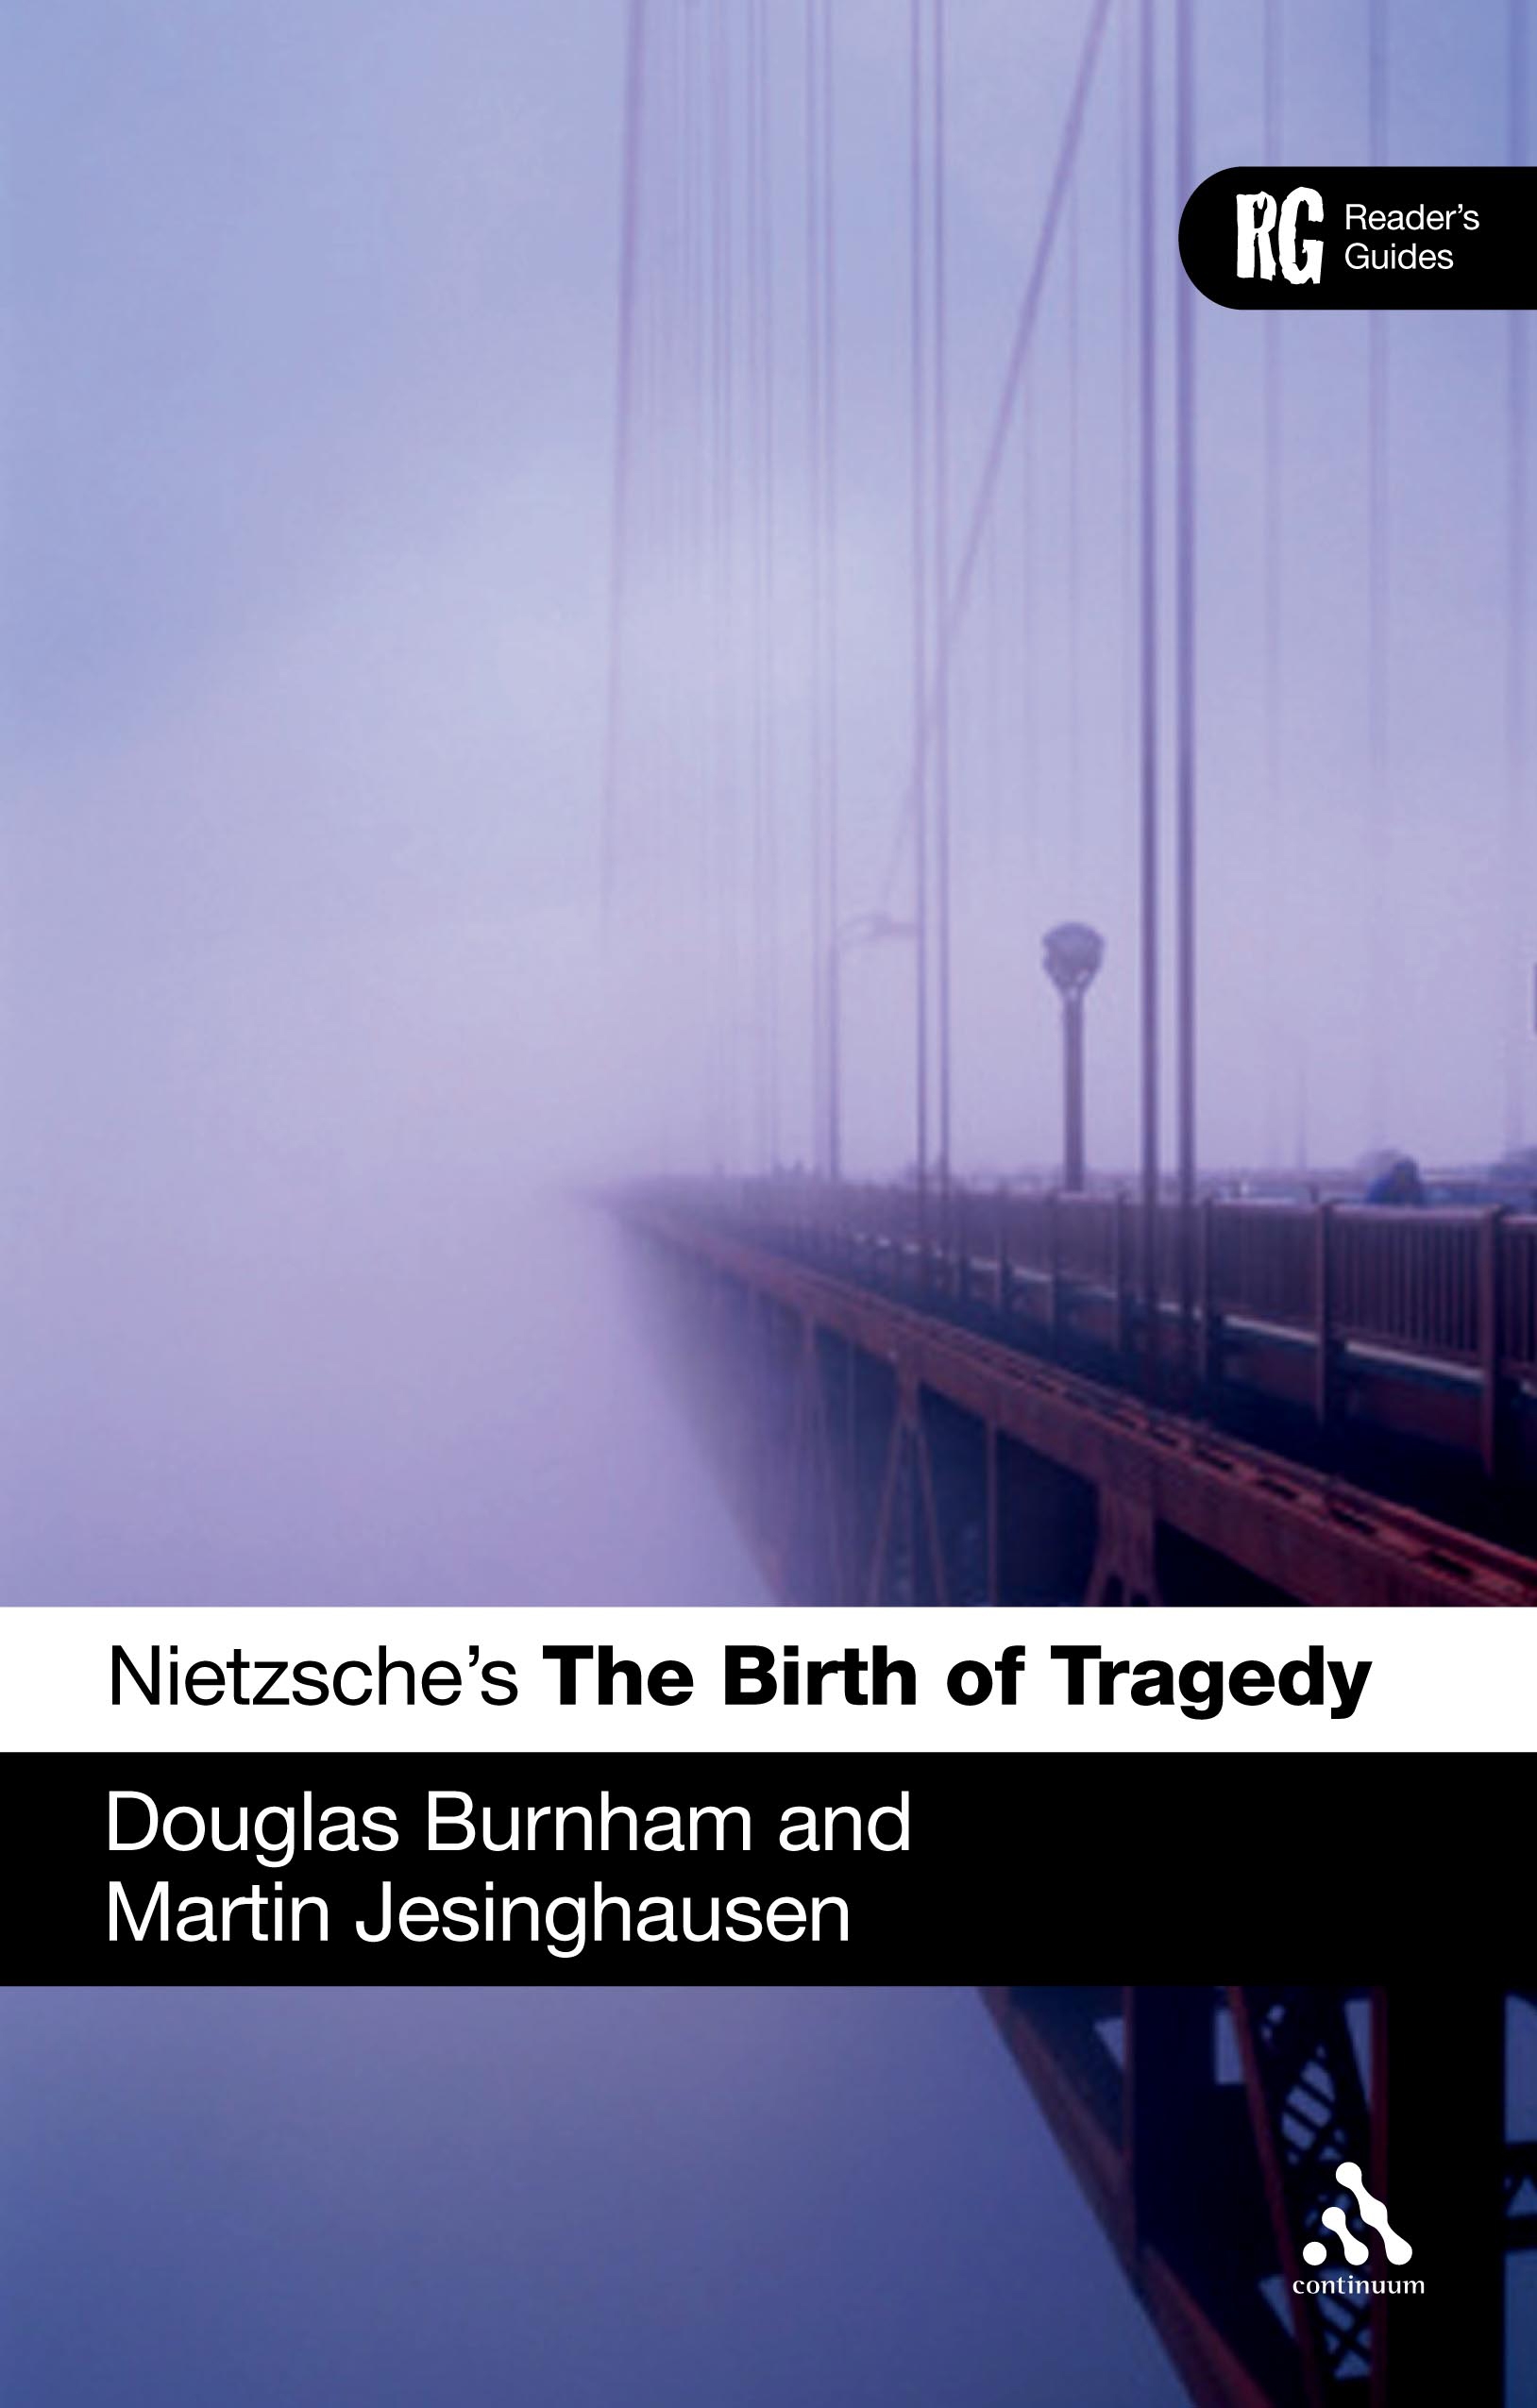 Nietzsche's 'The Birth of Tragedy' - 15-24.99